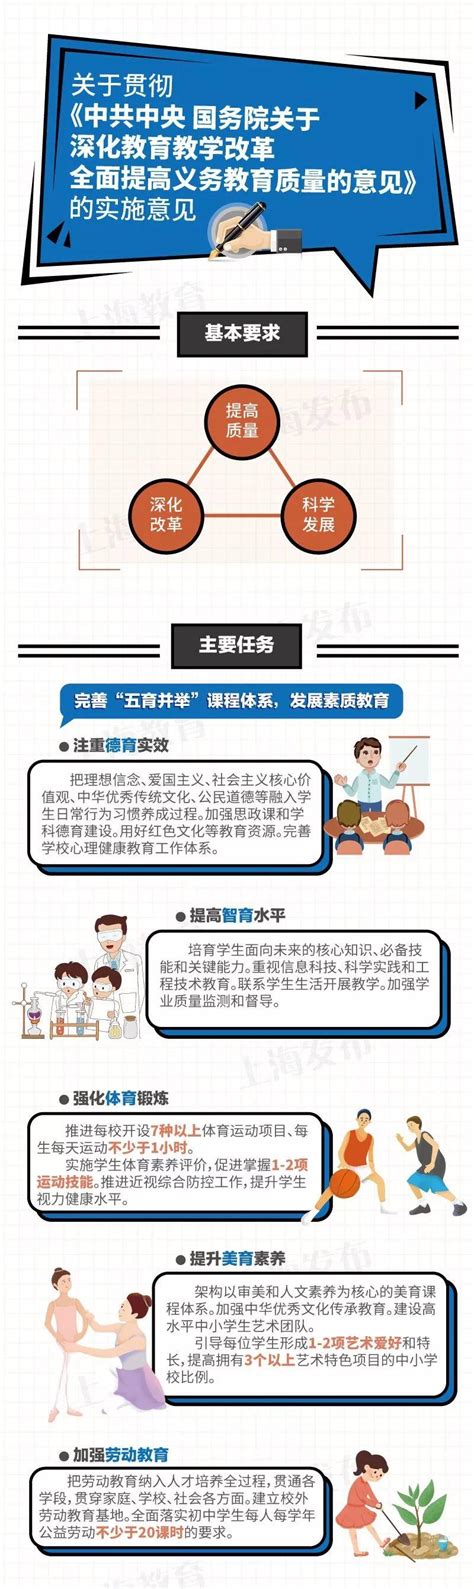 多元教学有效性评估 - 上海交通大学教学发展中心